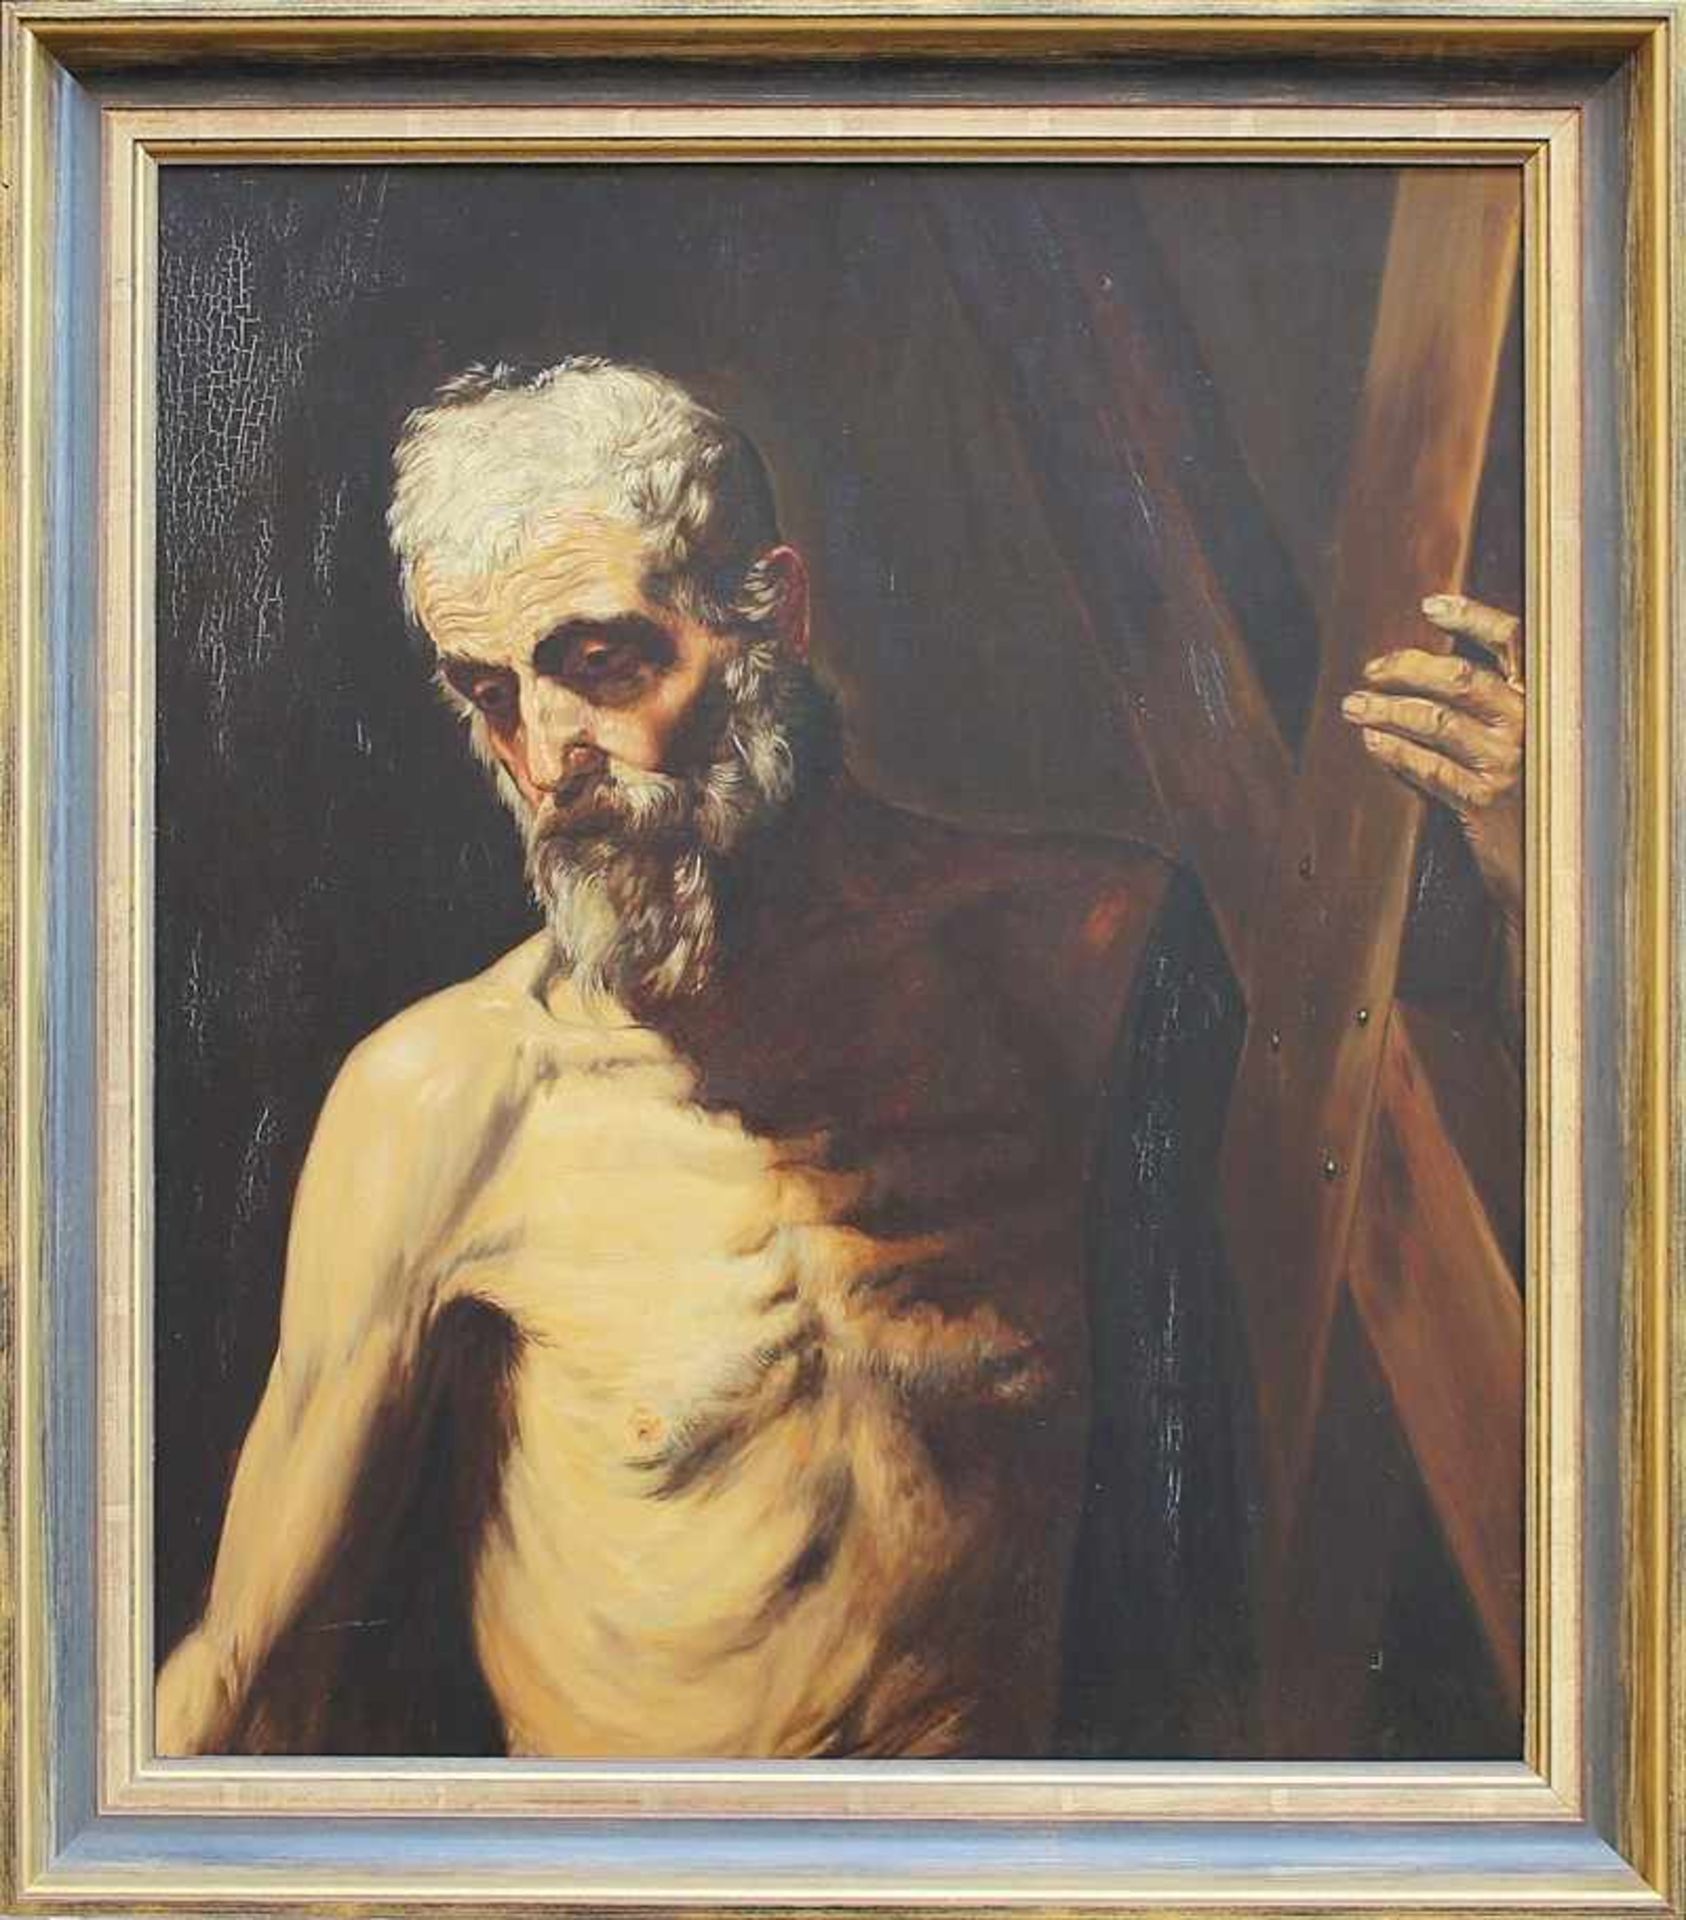 Aguinaga, Angela Kopie n. Ribera, "Der heilige Andreas mit seinem Matyriumskreuz", Öl/Lwd., gedeckte